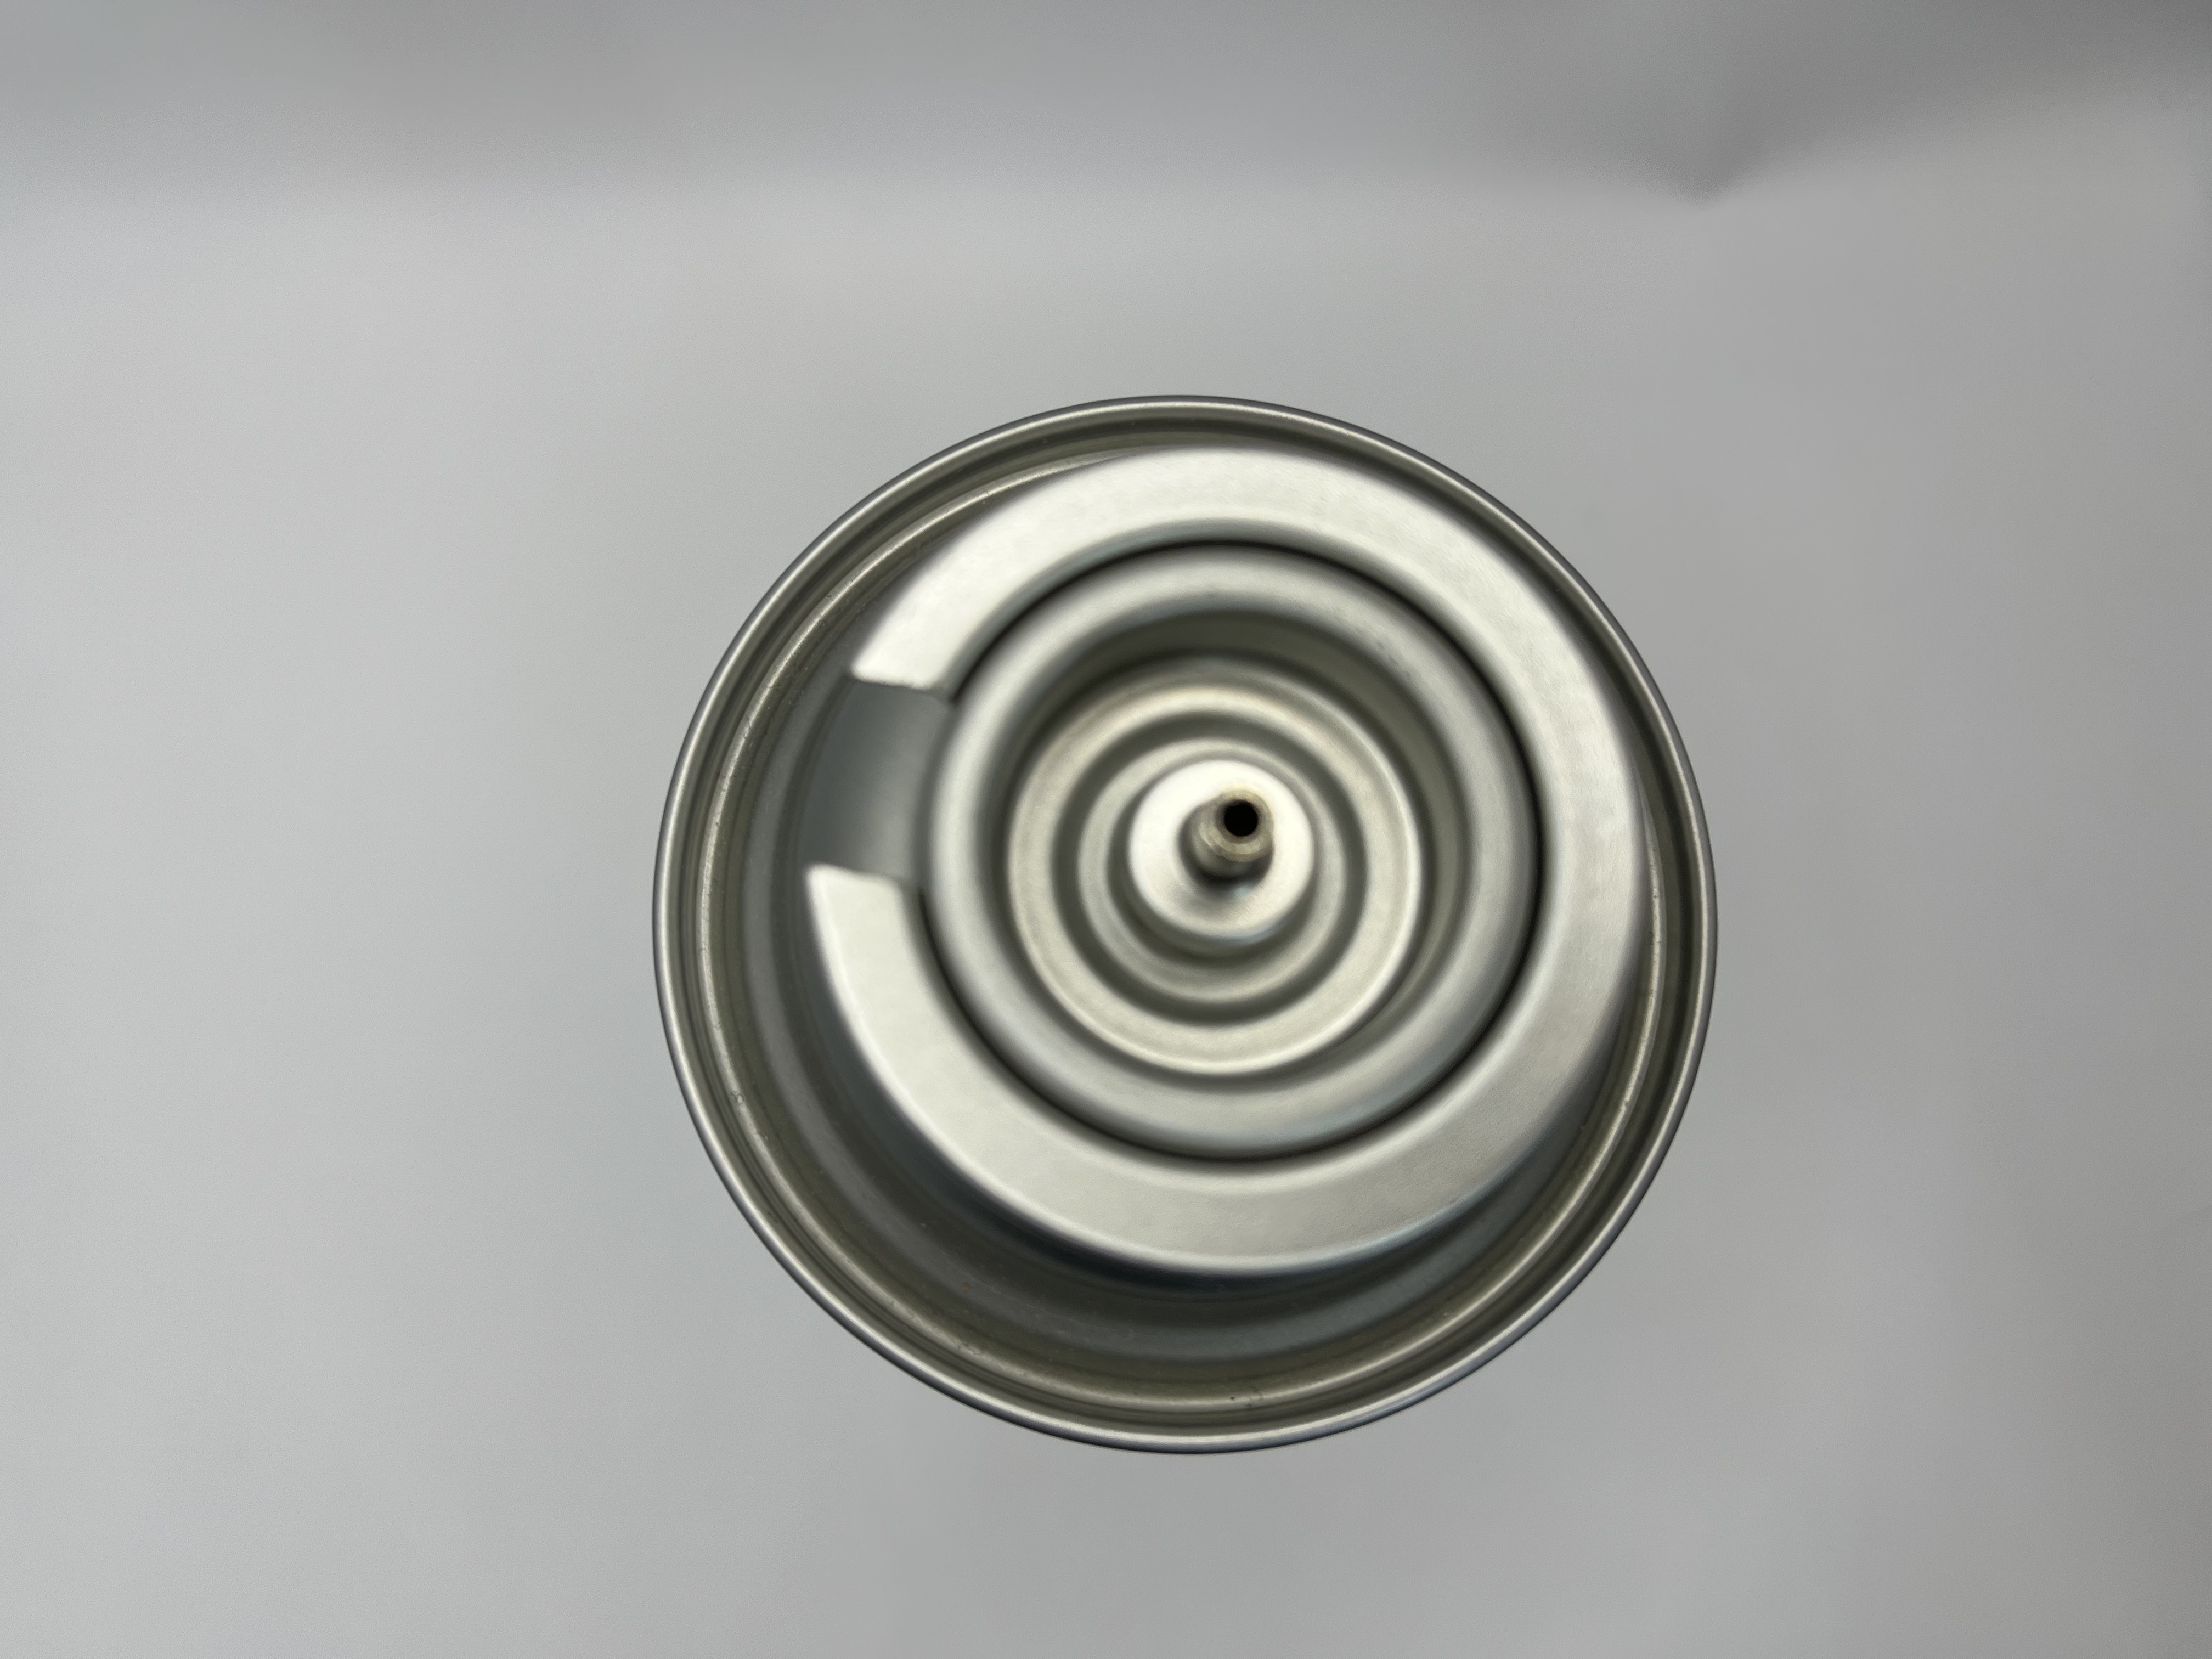 Клапан газовой плиты премиум -клапана с функциями безопасности - обеспечение душевного спокойствия на кухне